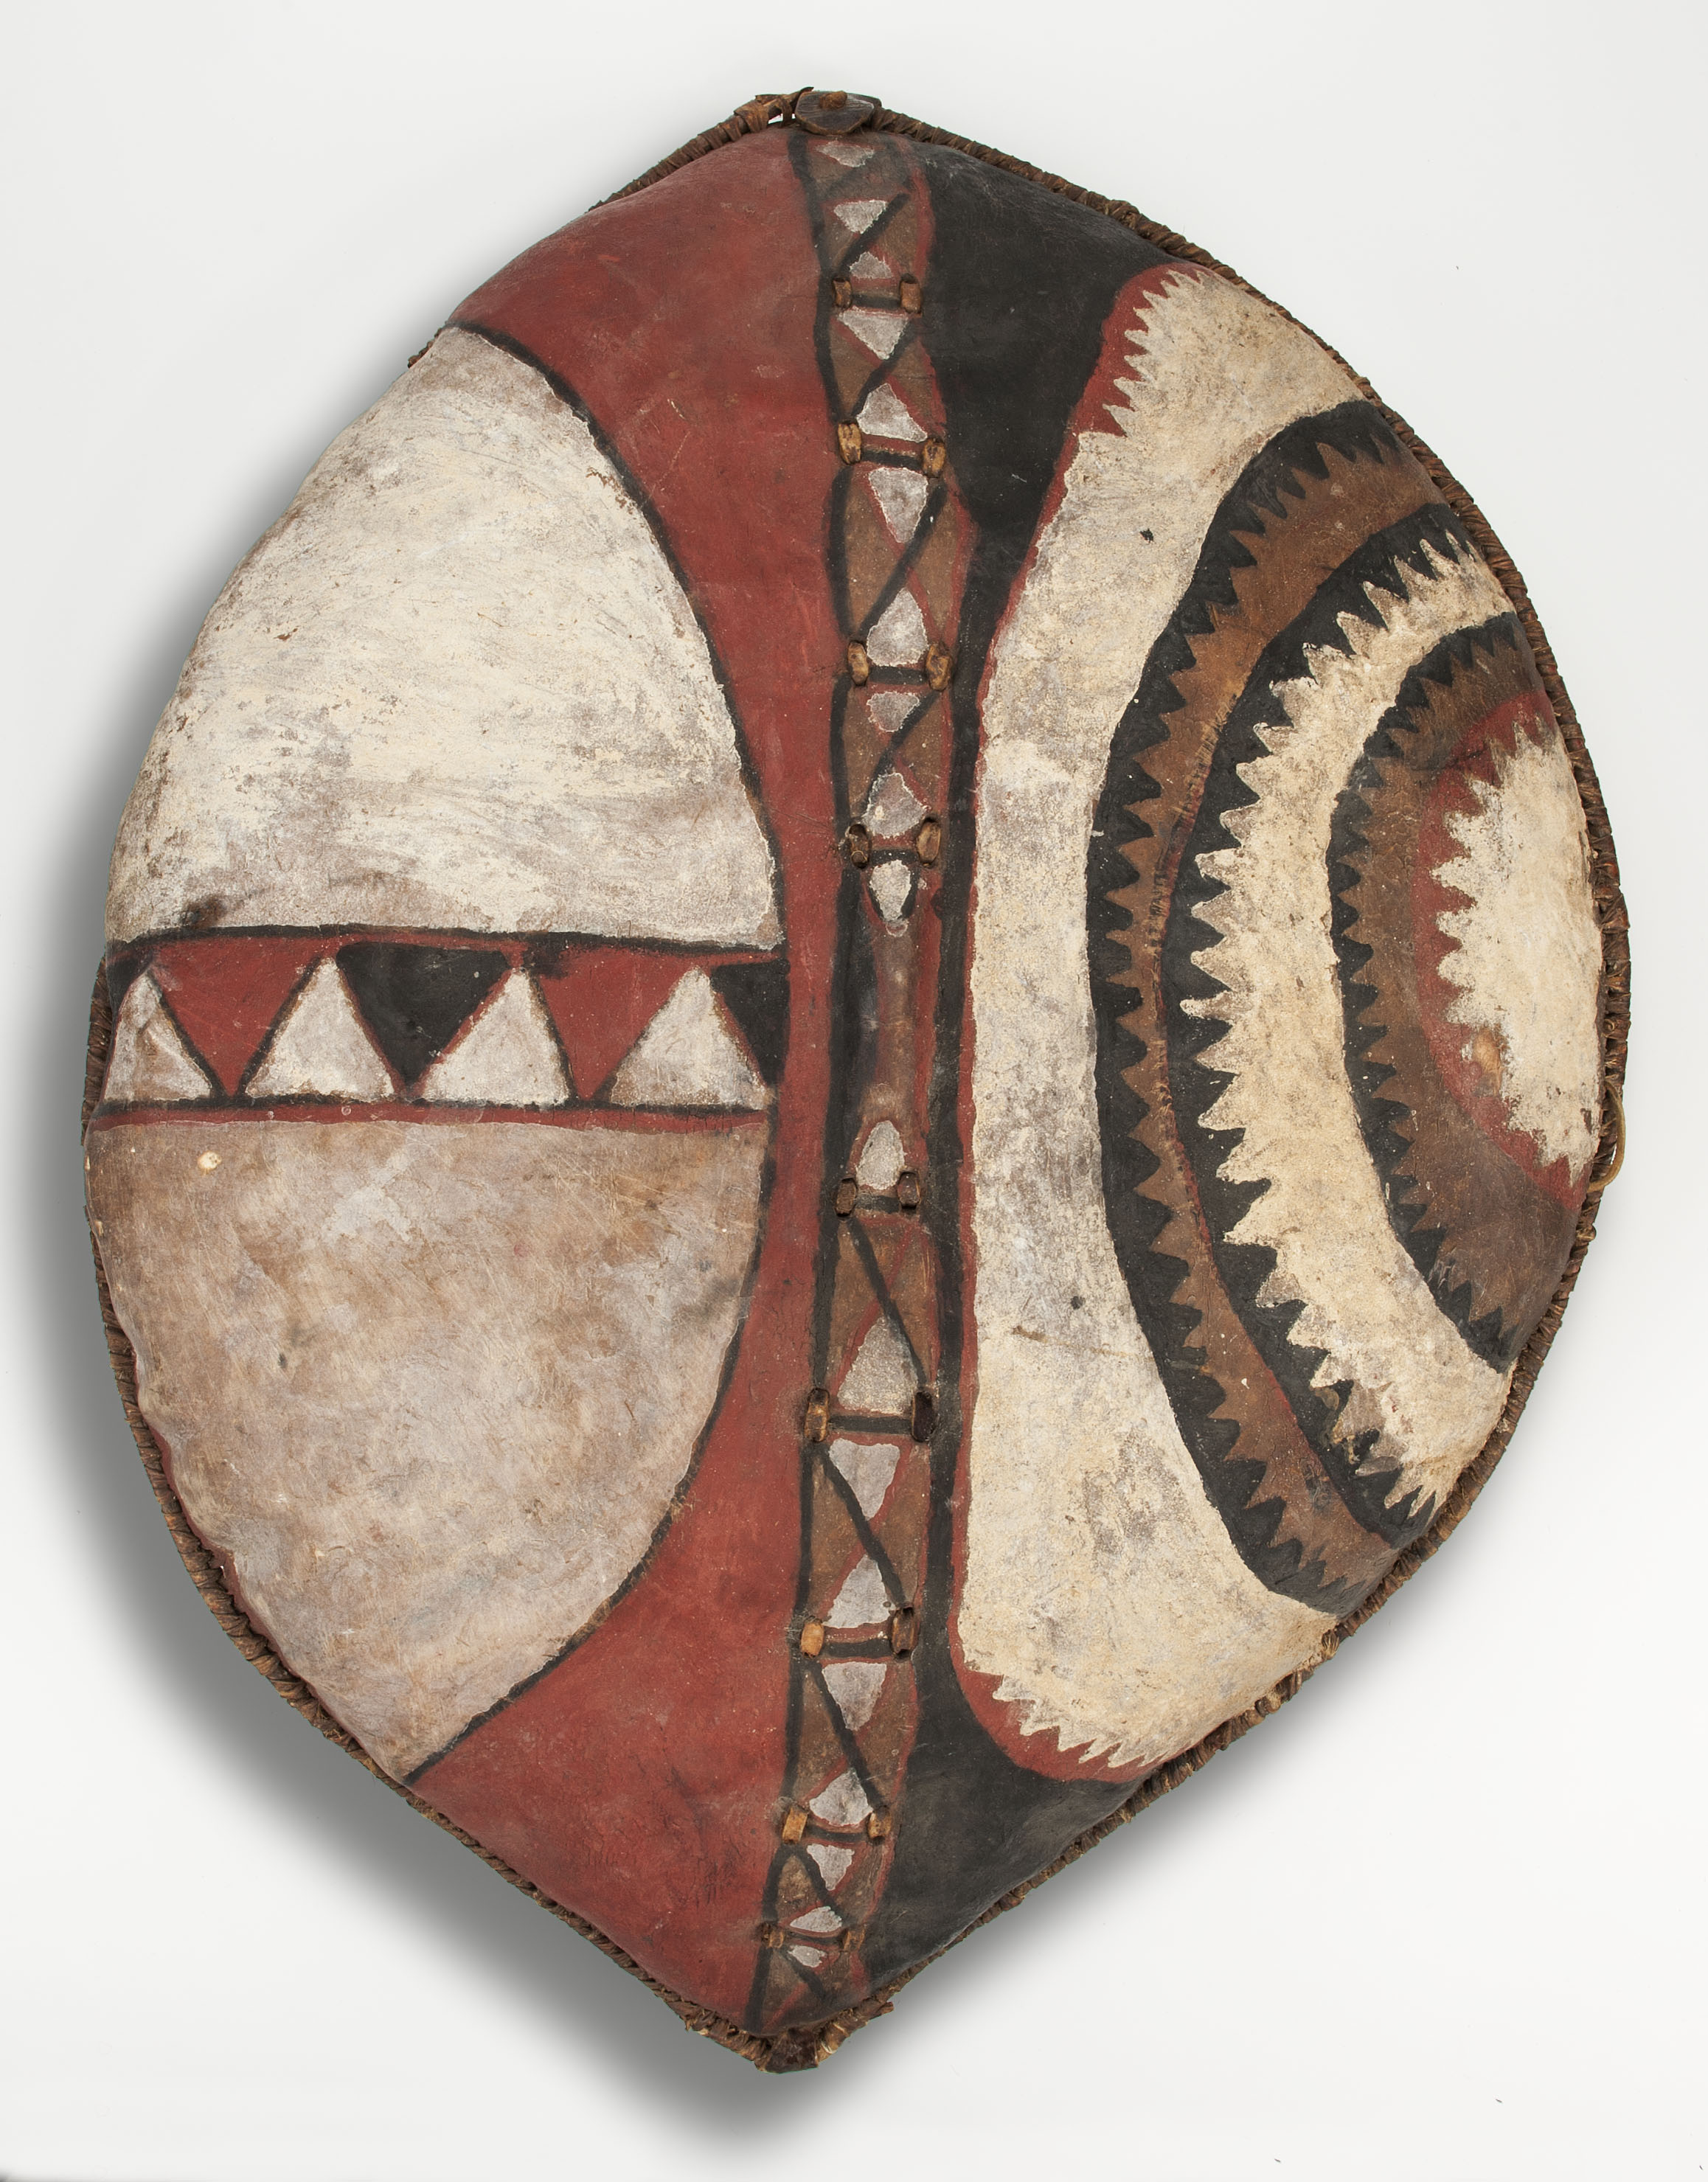 Štít by Unknown Artist - nalezeno poblíž Naroku v roce 1977 - 94 x 72,4 cm 